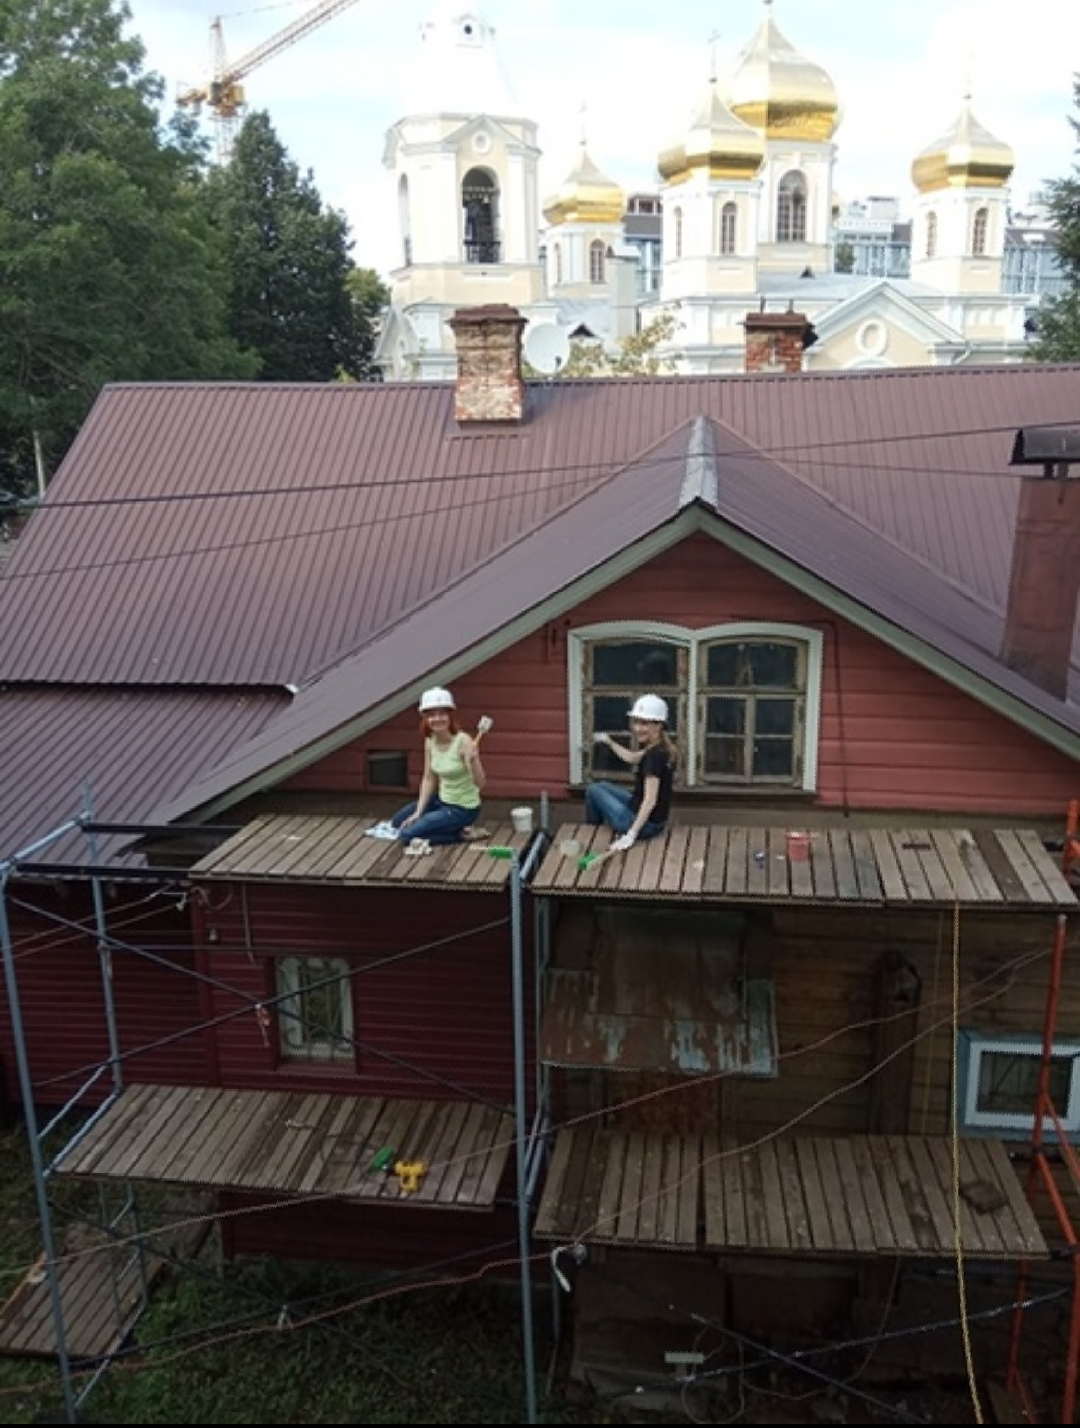 Дореволюционные предметы нашли при реставрации дома в Нижнем Новгороде (ФОТО)